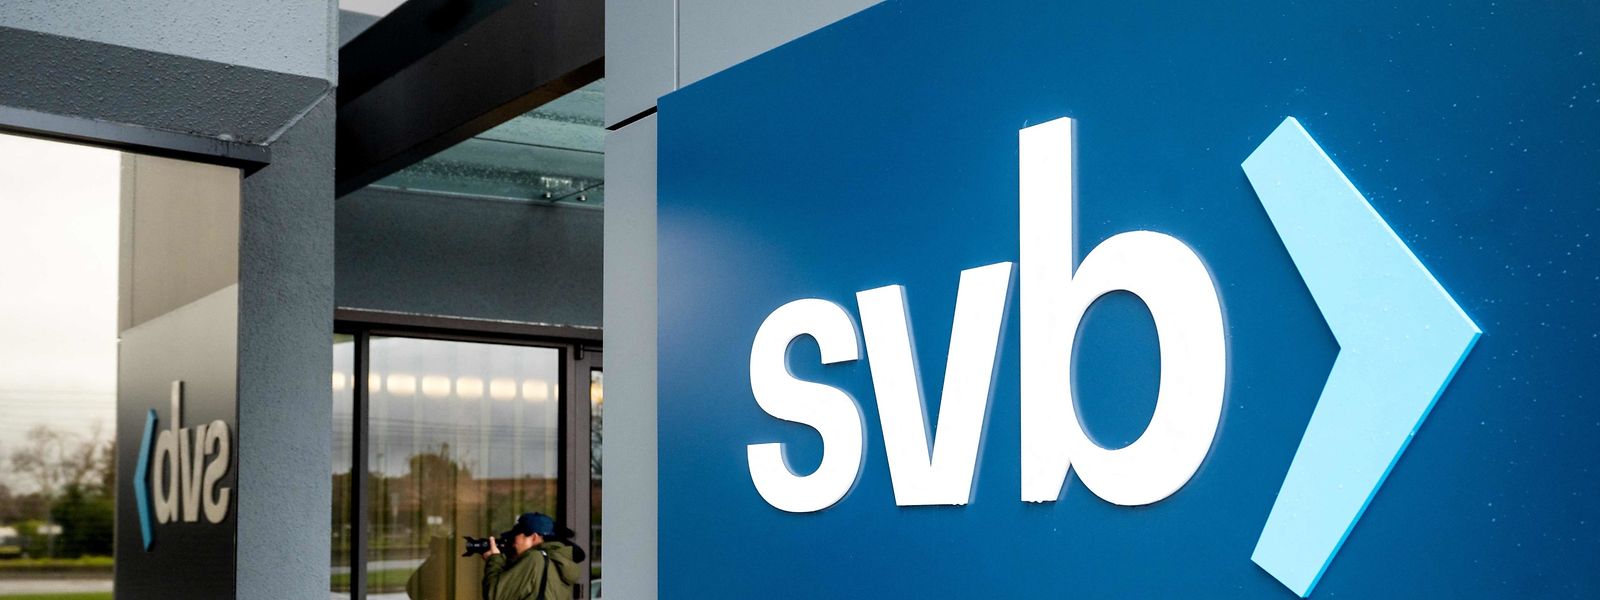 La banque SVB, qui ne parvenait plus à faire face aux retraits massifs de ses clients, a été fermée vendredi par les autorités américaines. 